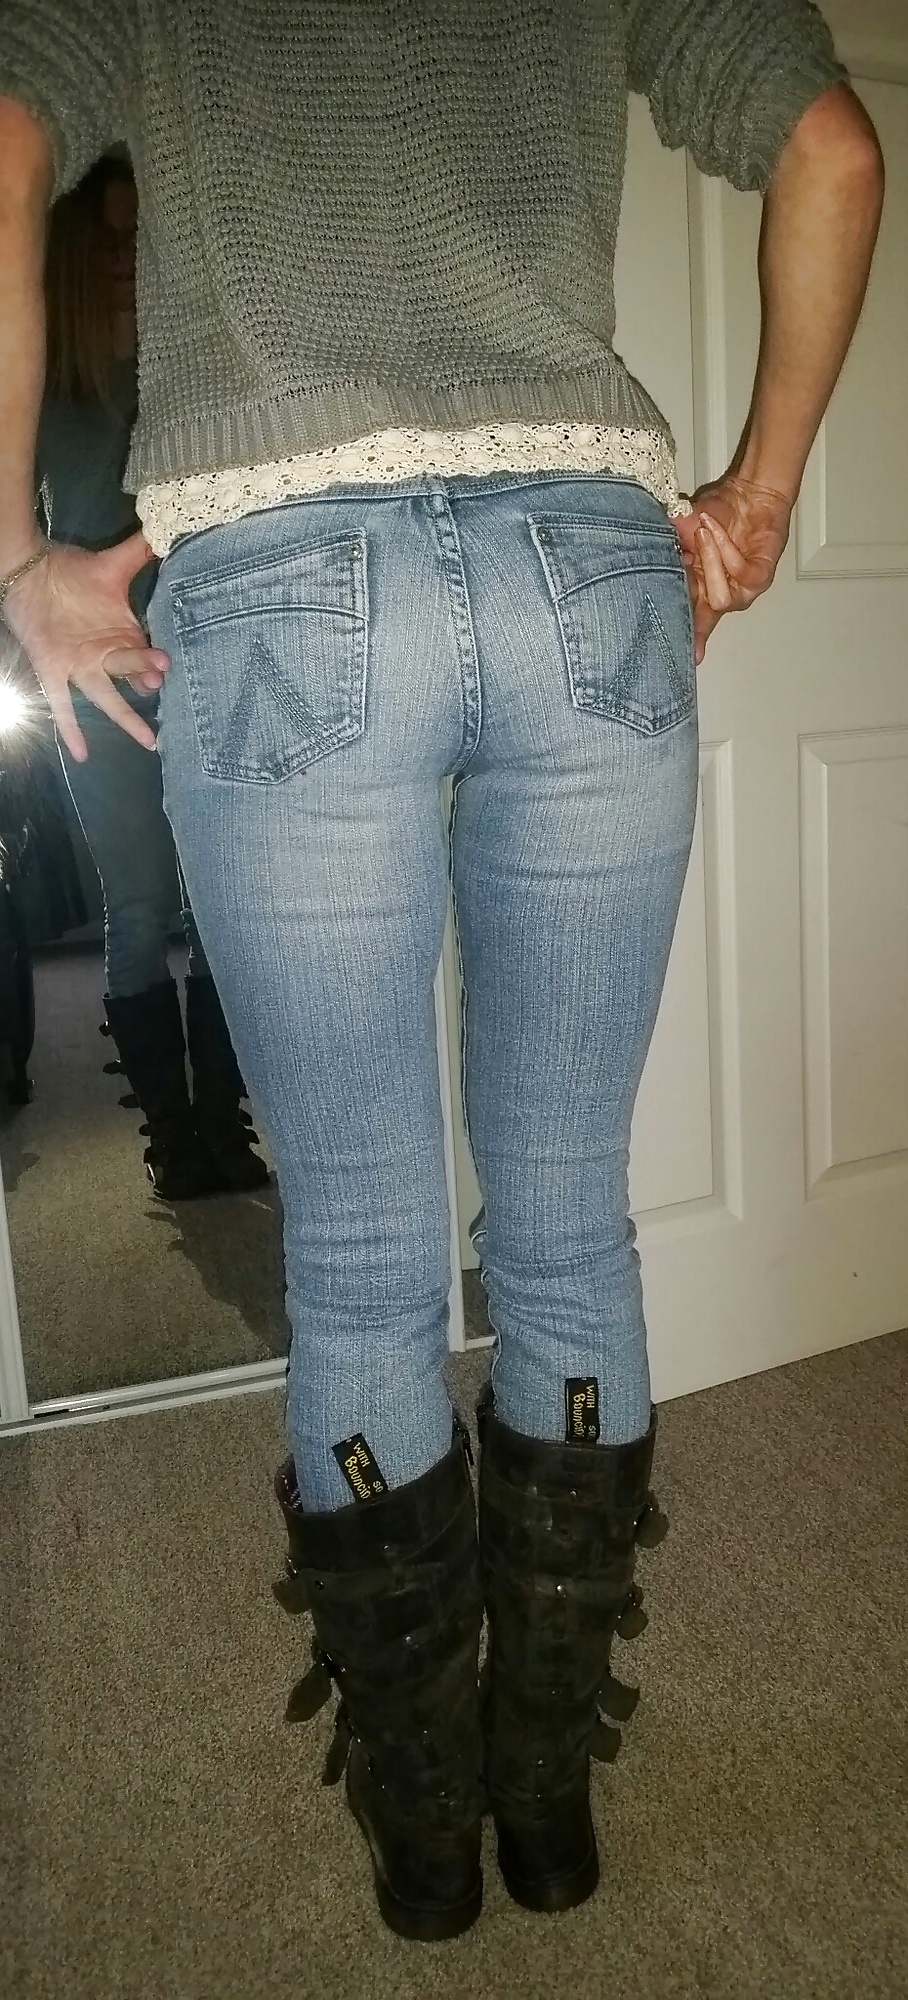 random jeans, ass, bra shots porn gallery